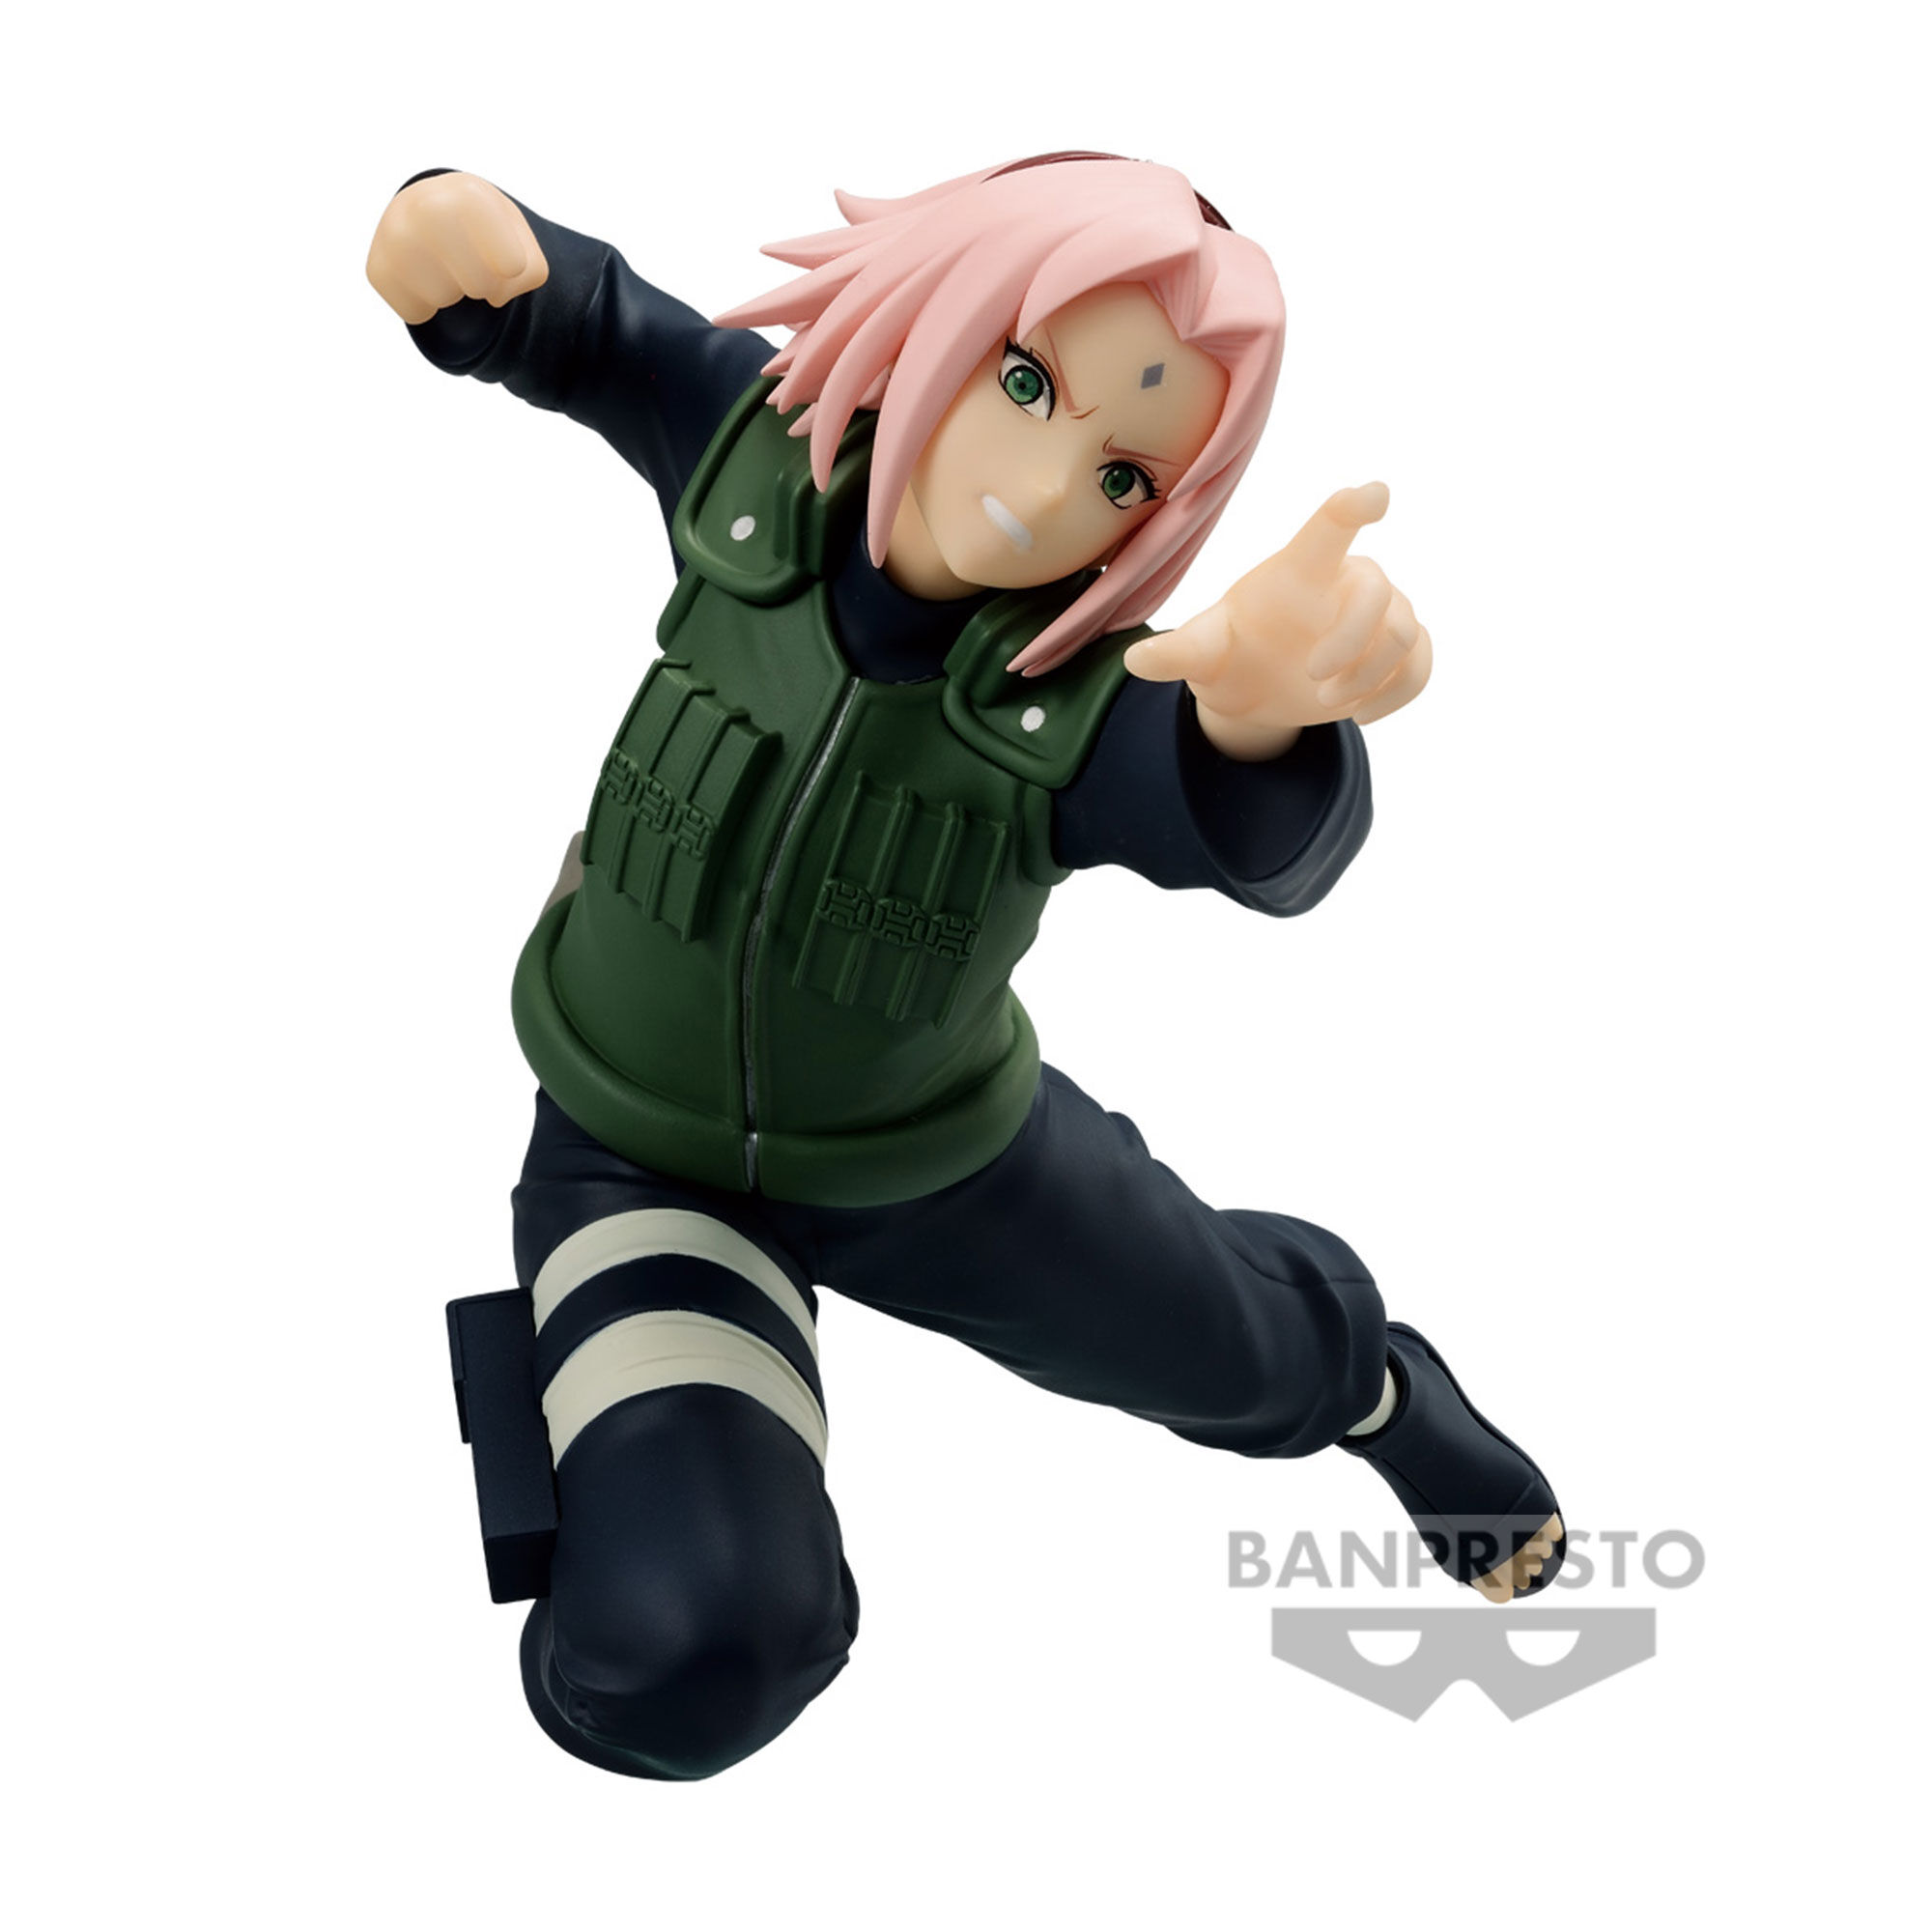 Naruto Shippuden - Sakura Haruno Vibration Stars Prize Figure (Ver 